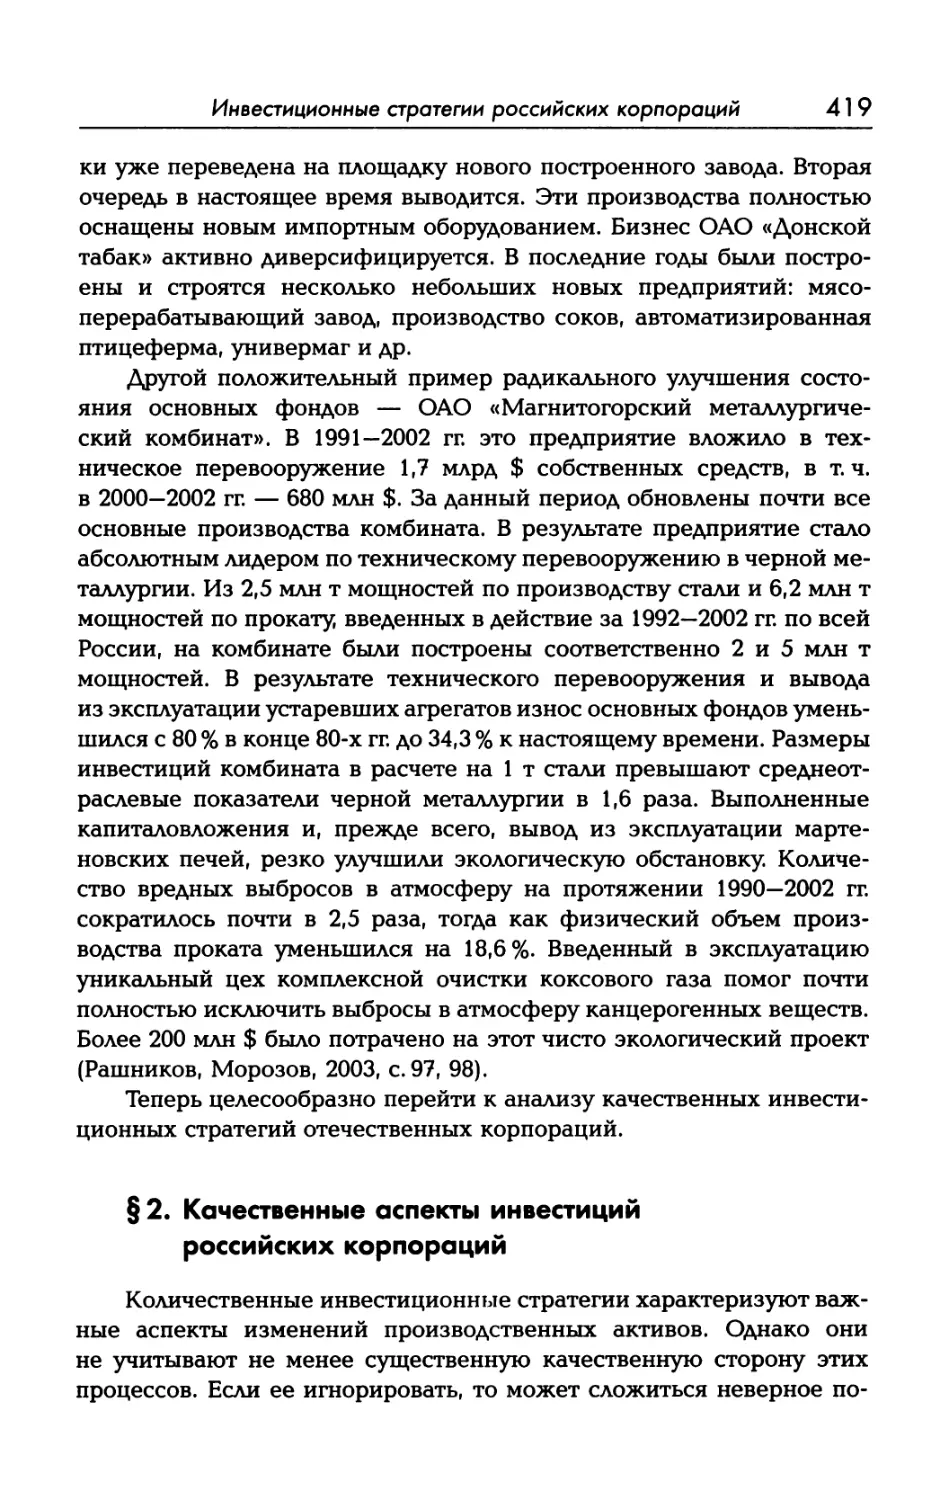 § 2. Качественные аспекты инвестиций российских корпораций